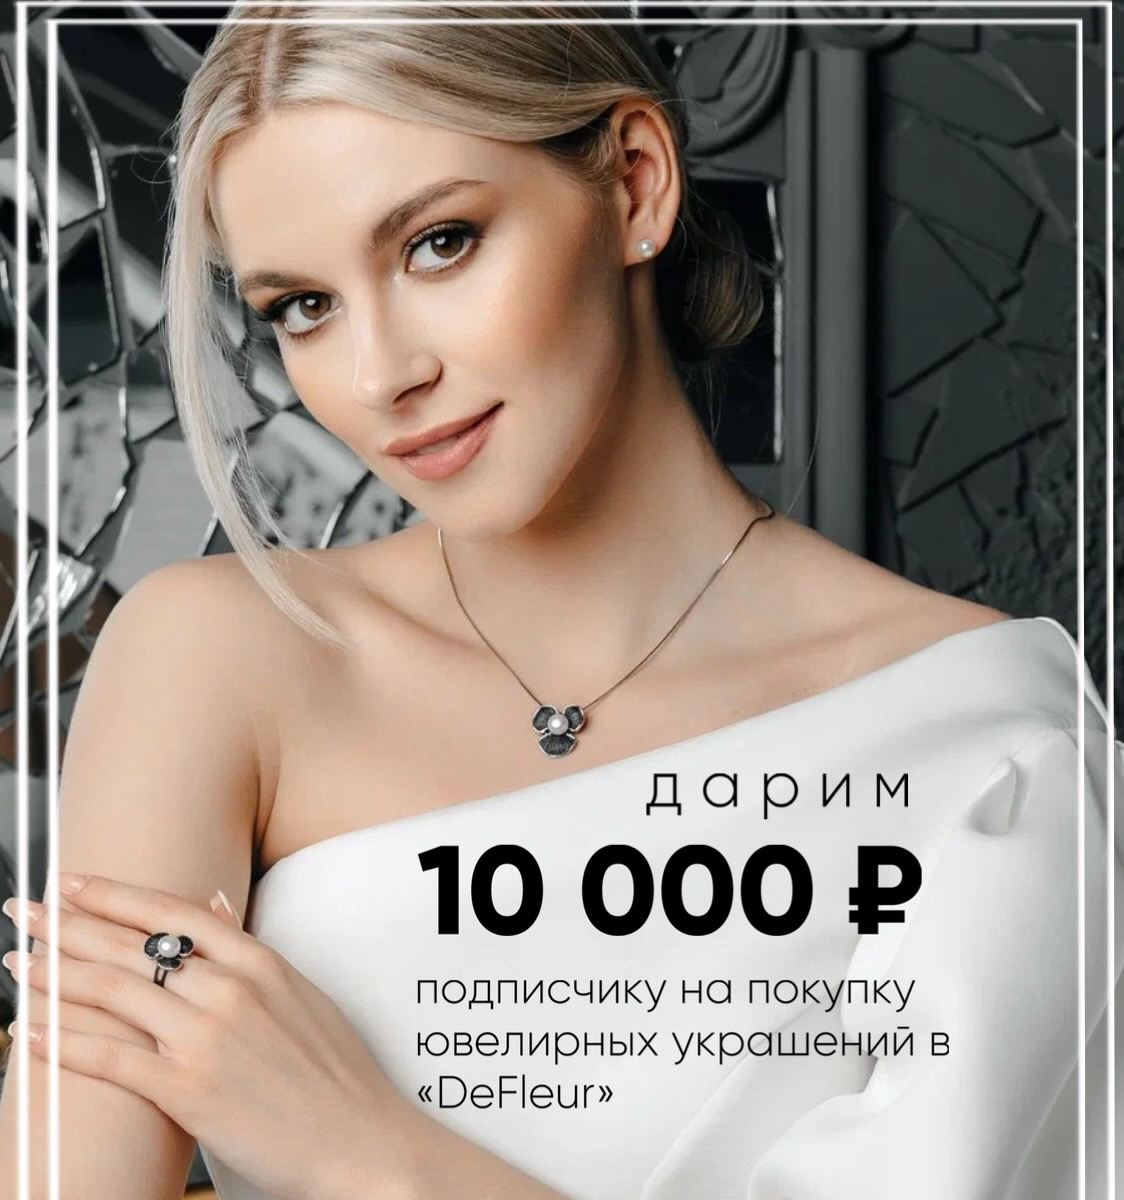 Разыгрываем 10 000 руб. на покупку украшений 